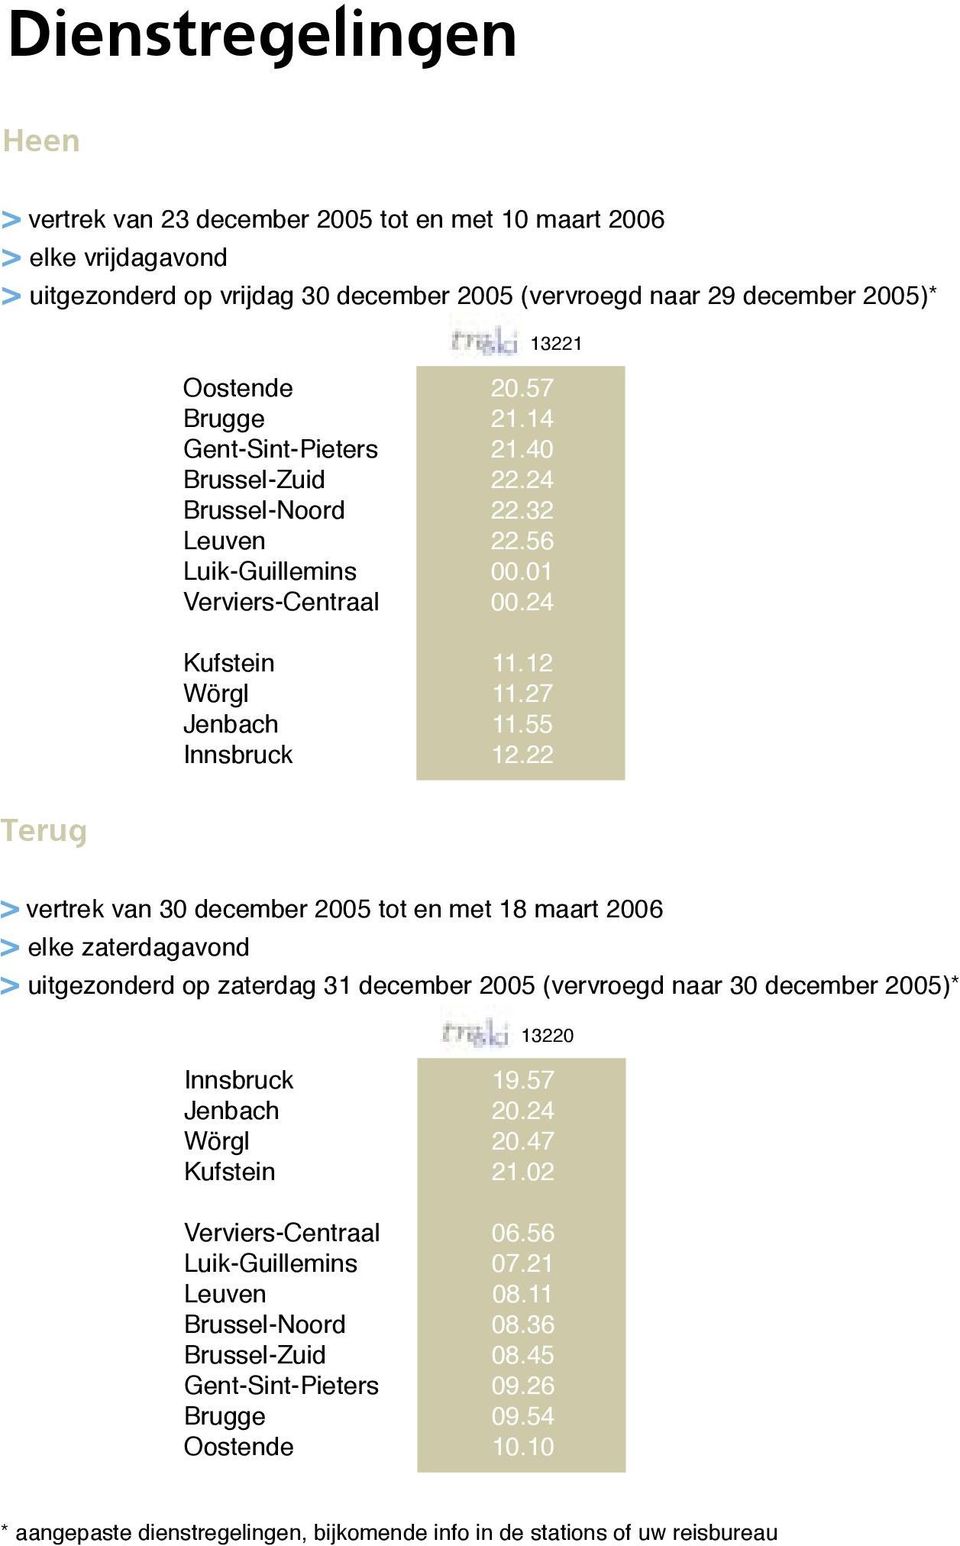 22 Terug > vertrek van 30 december 2005 tot en met 18 maart 2006 > elke zaterdagavond > uitgezonderd op zaterdag 31 december 2005 (vervroegd naar 30 december 2005)* 13220 Kufstein Verviers-Centraal